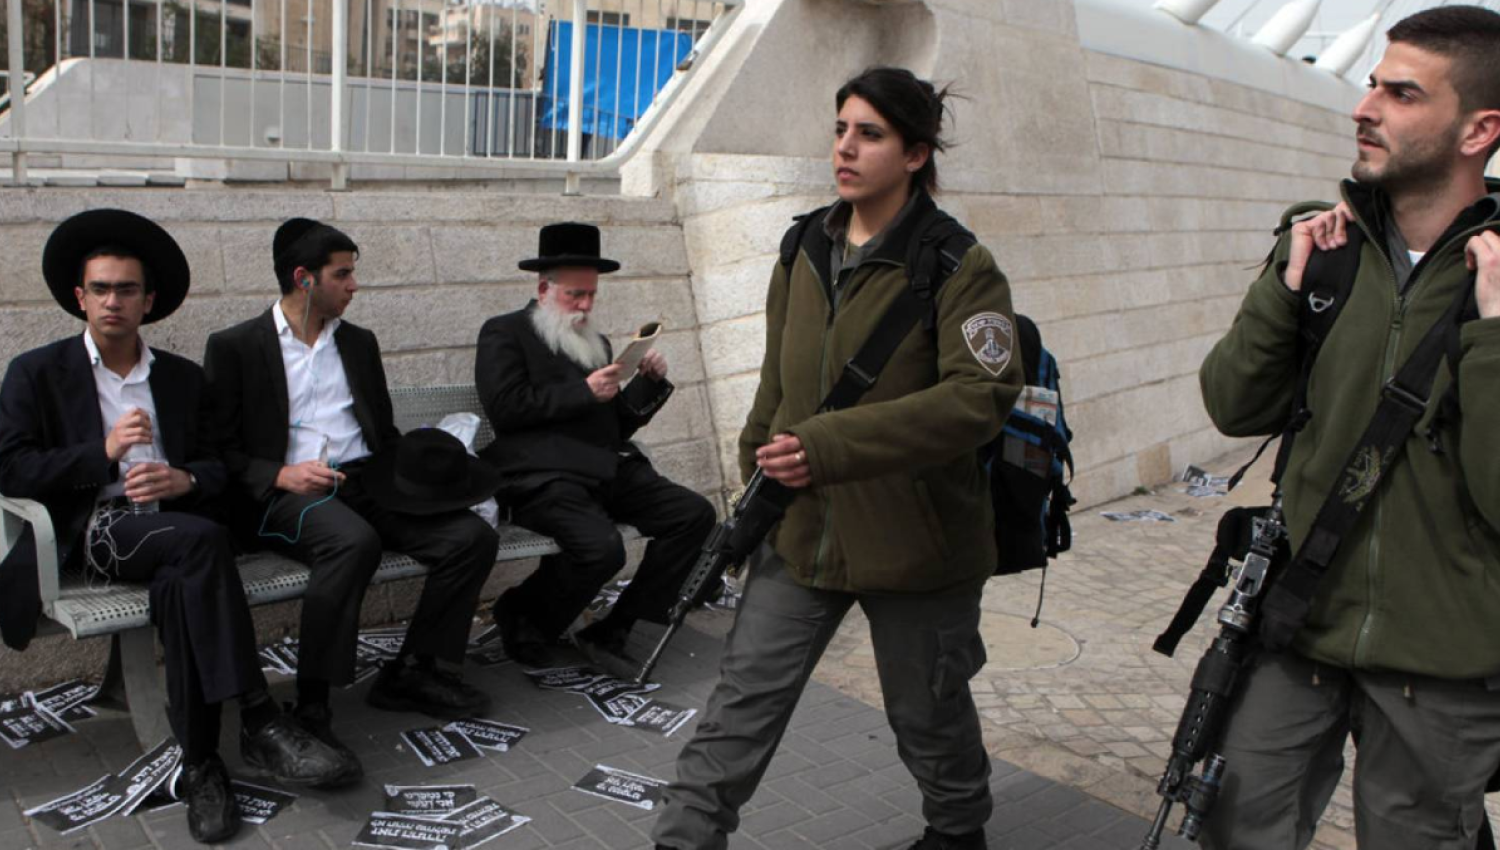 וול סטריט ג'ורנל: גיוס החרדים מצית מחדש את המתיחות החריפה בישראל